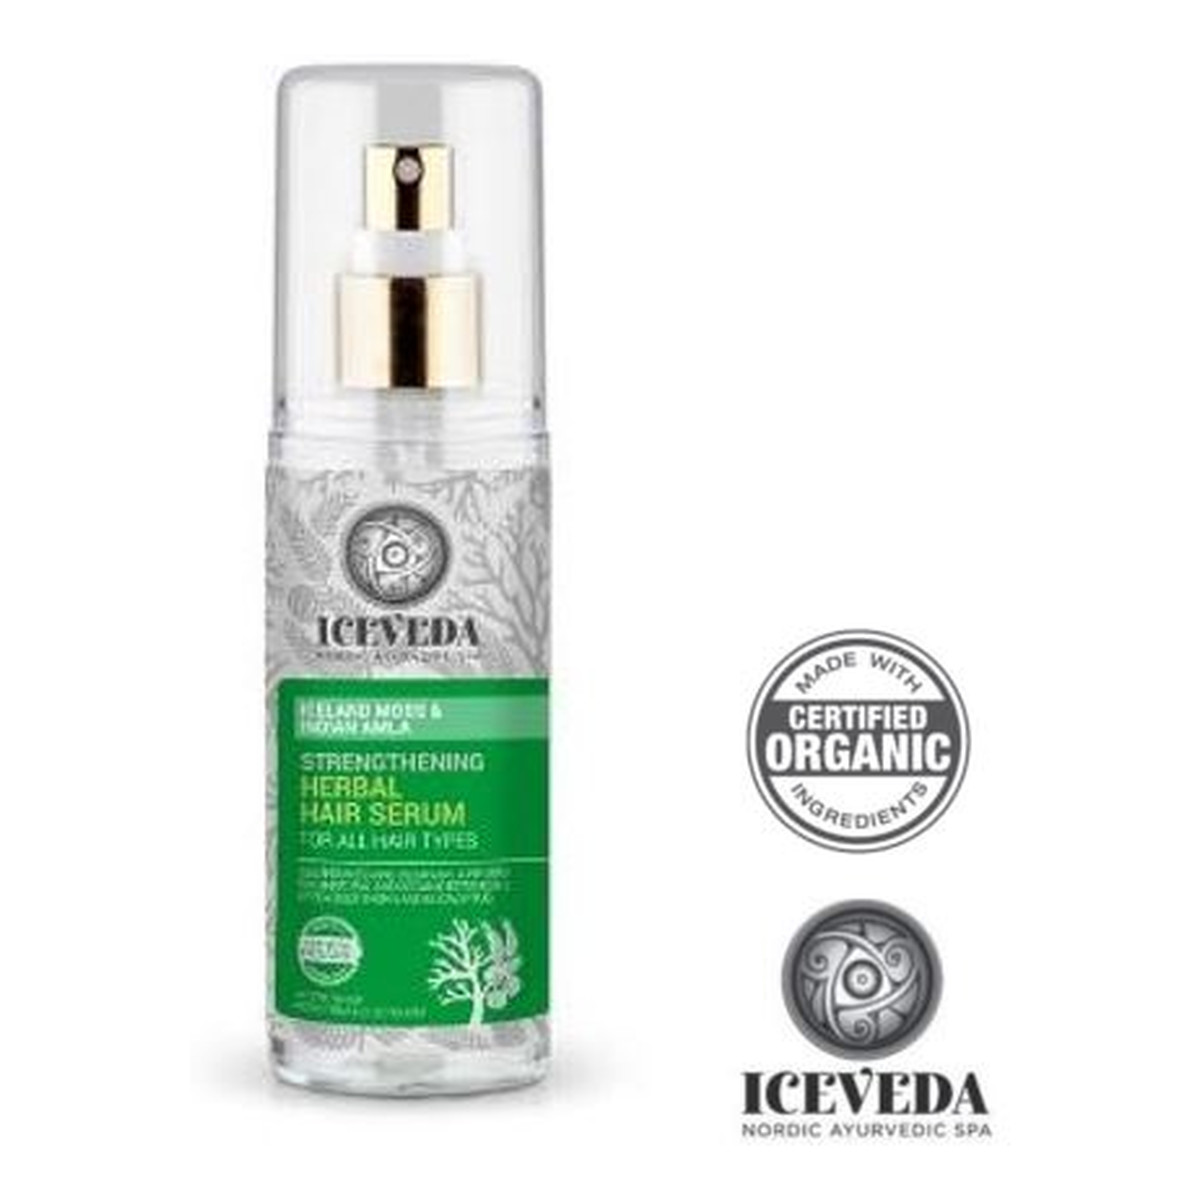 Iceveda Płucnica islandzka & Amla indyjska Wzmacniające serum ziołowe do wszystkich typów włosów 125ml